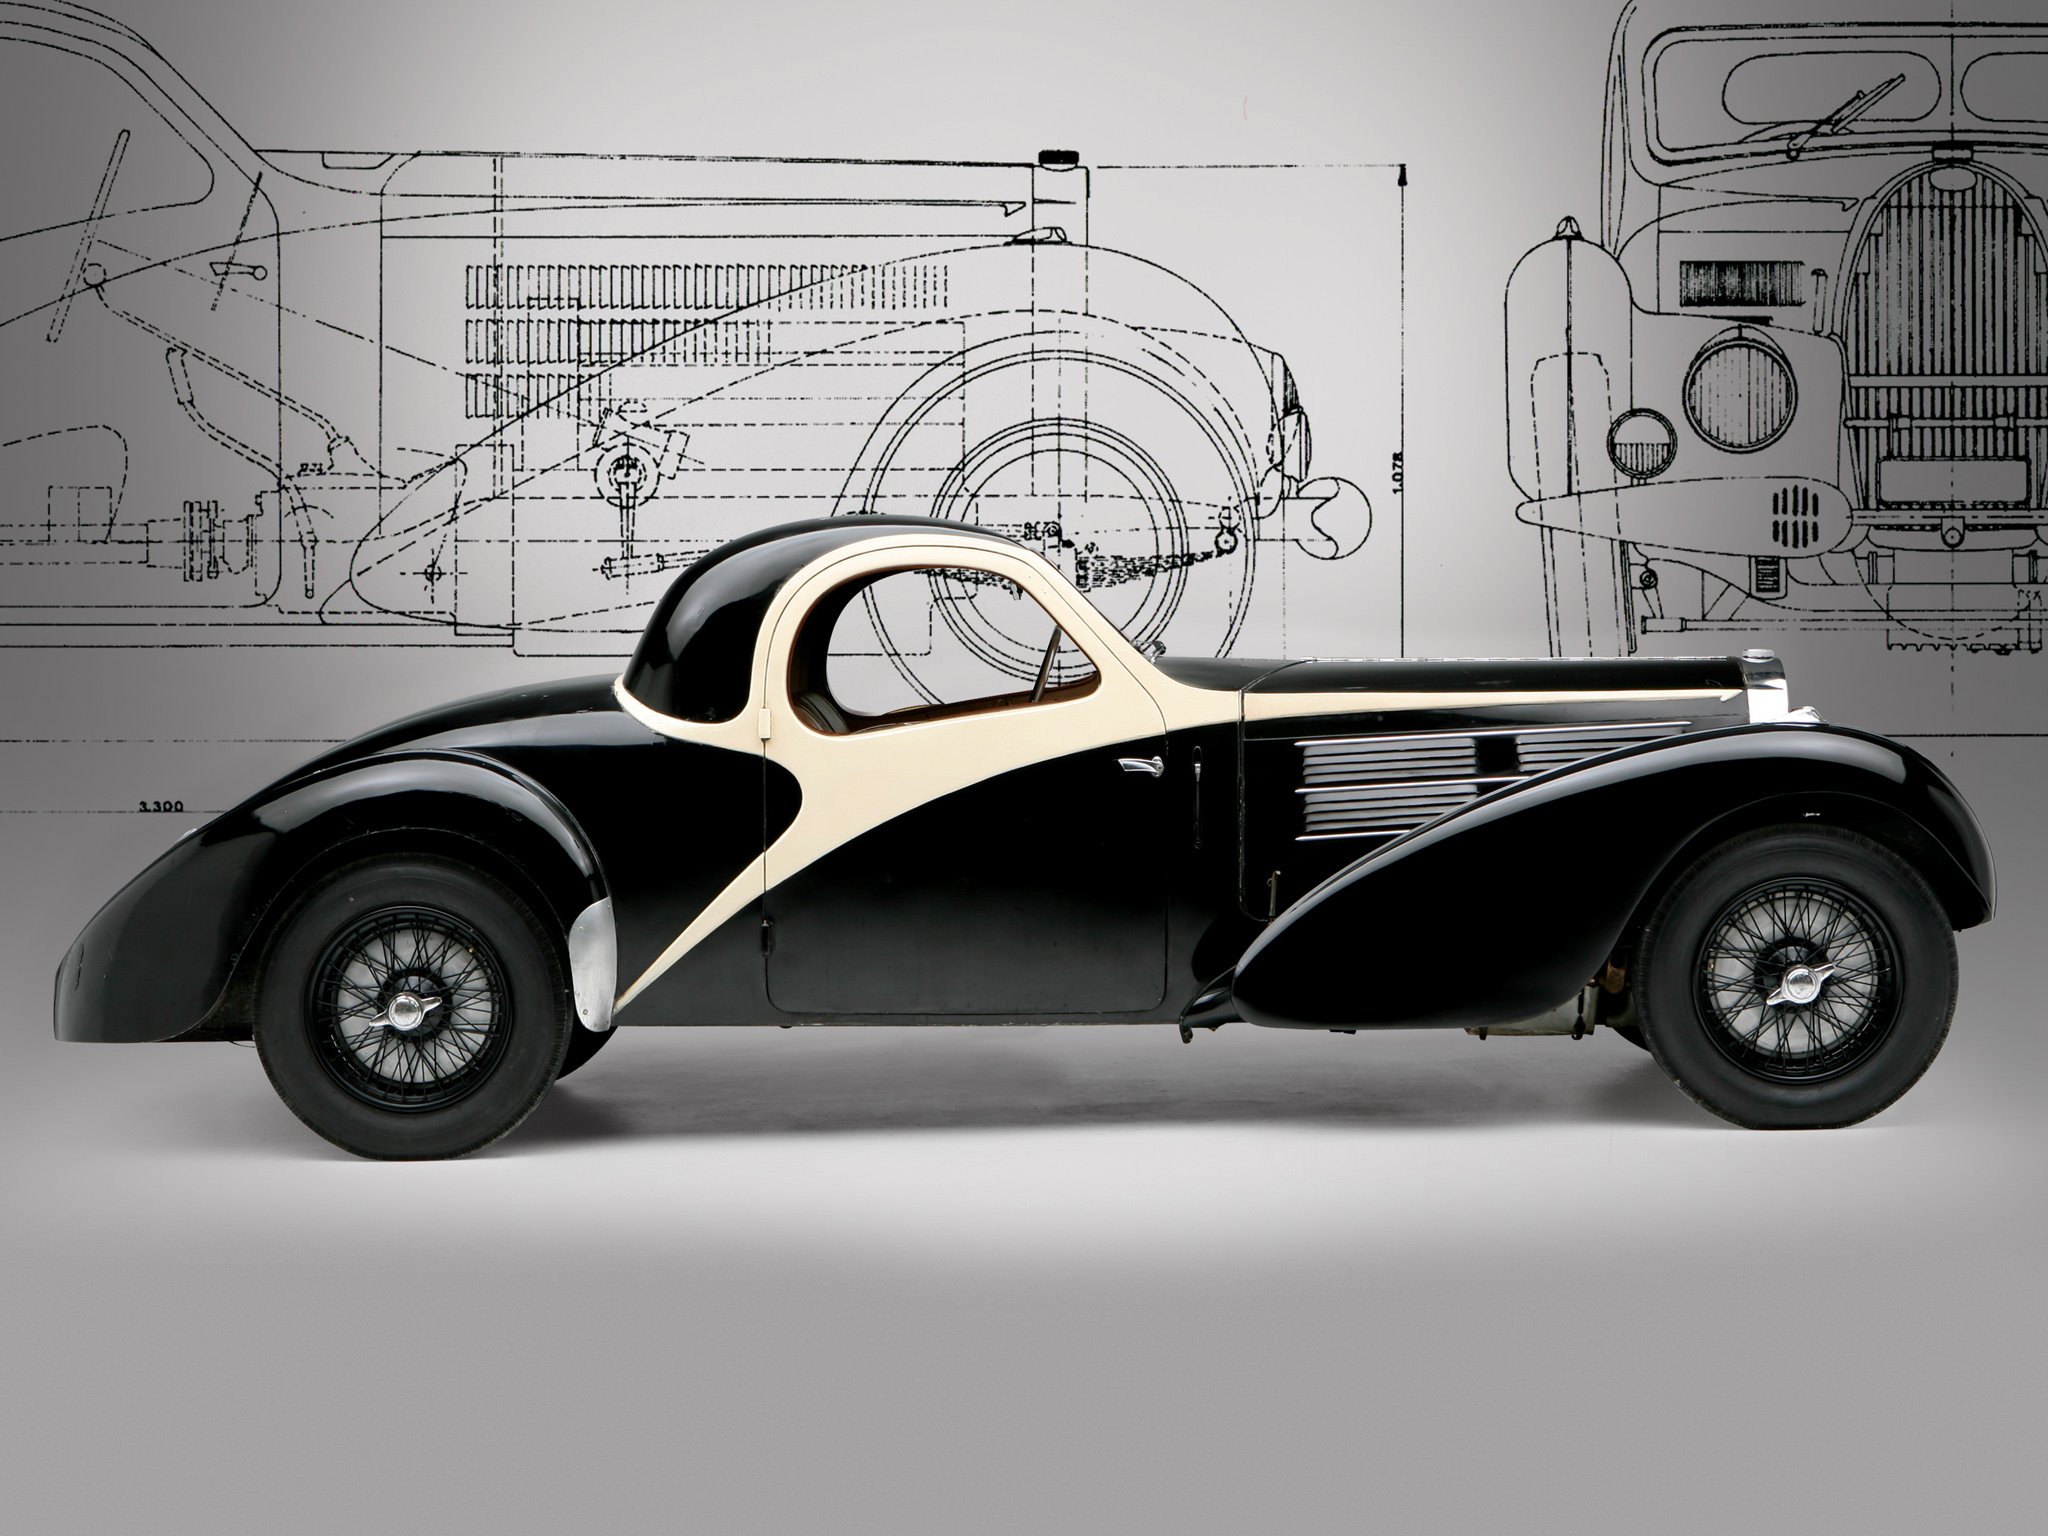 Bugatti - Nhãn hiệu xe hơi sang trọng với những thiết kế đầy tinh tế và công nghệ đột phá. Hãy tận hưởng những khung cảnh tuyệt đẹp với những chiếc xe Bugatti tuyệt đẹp, tràn đầy cảm hứng và đam mê. 